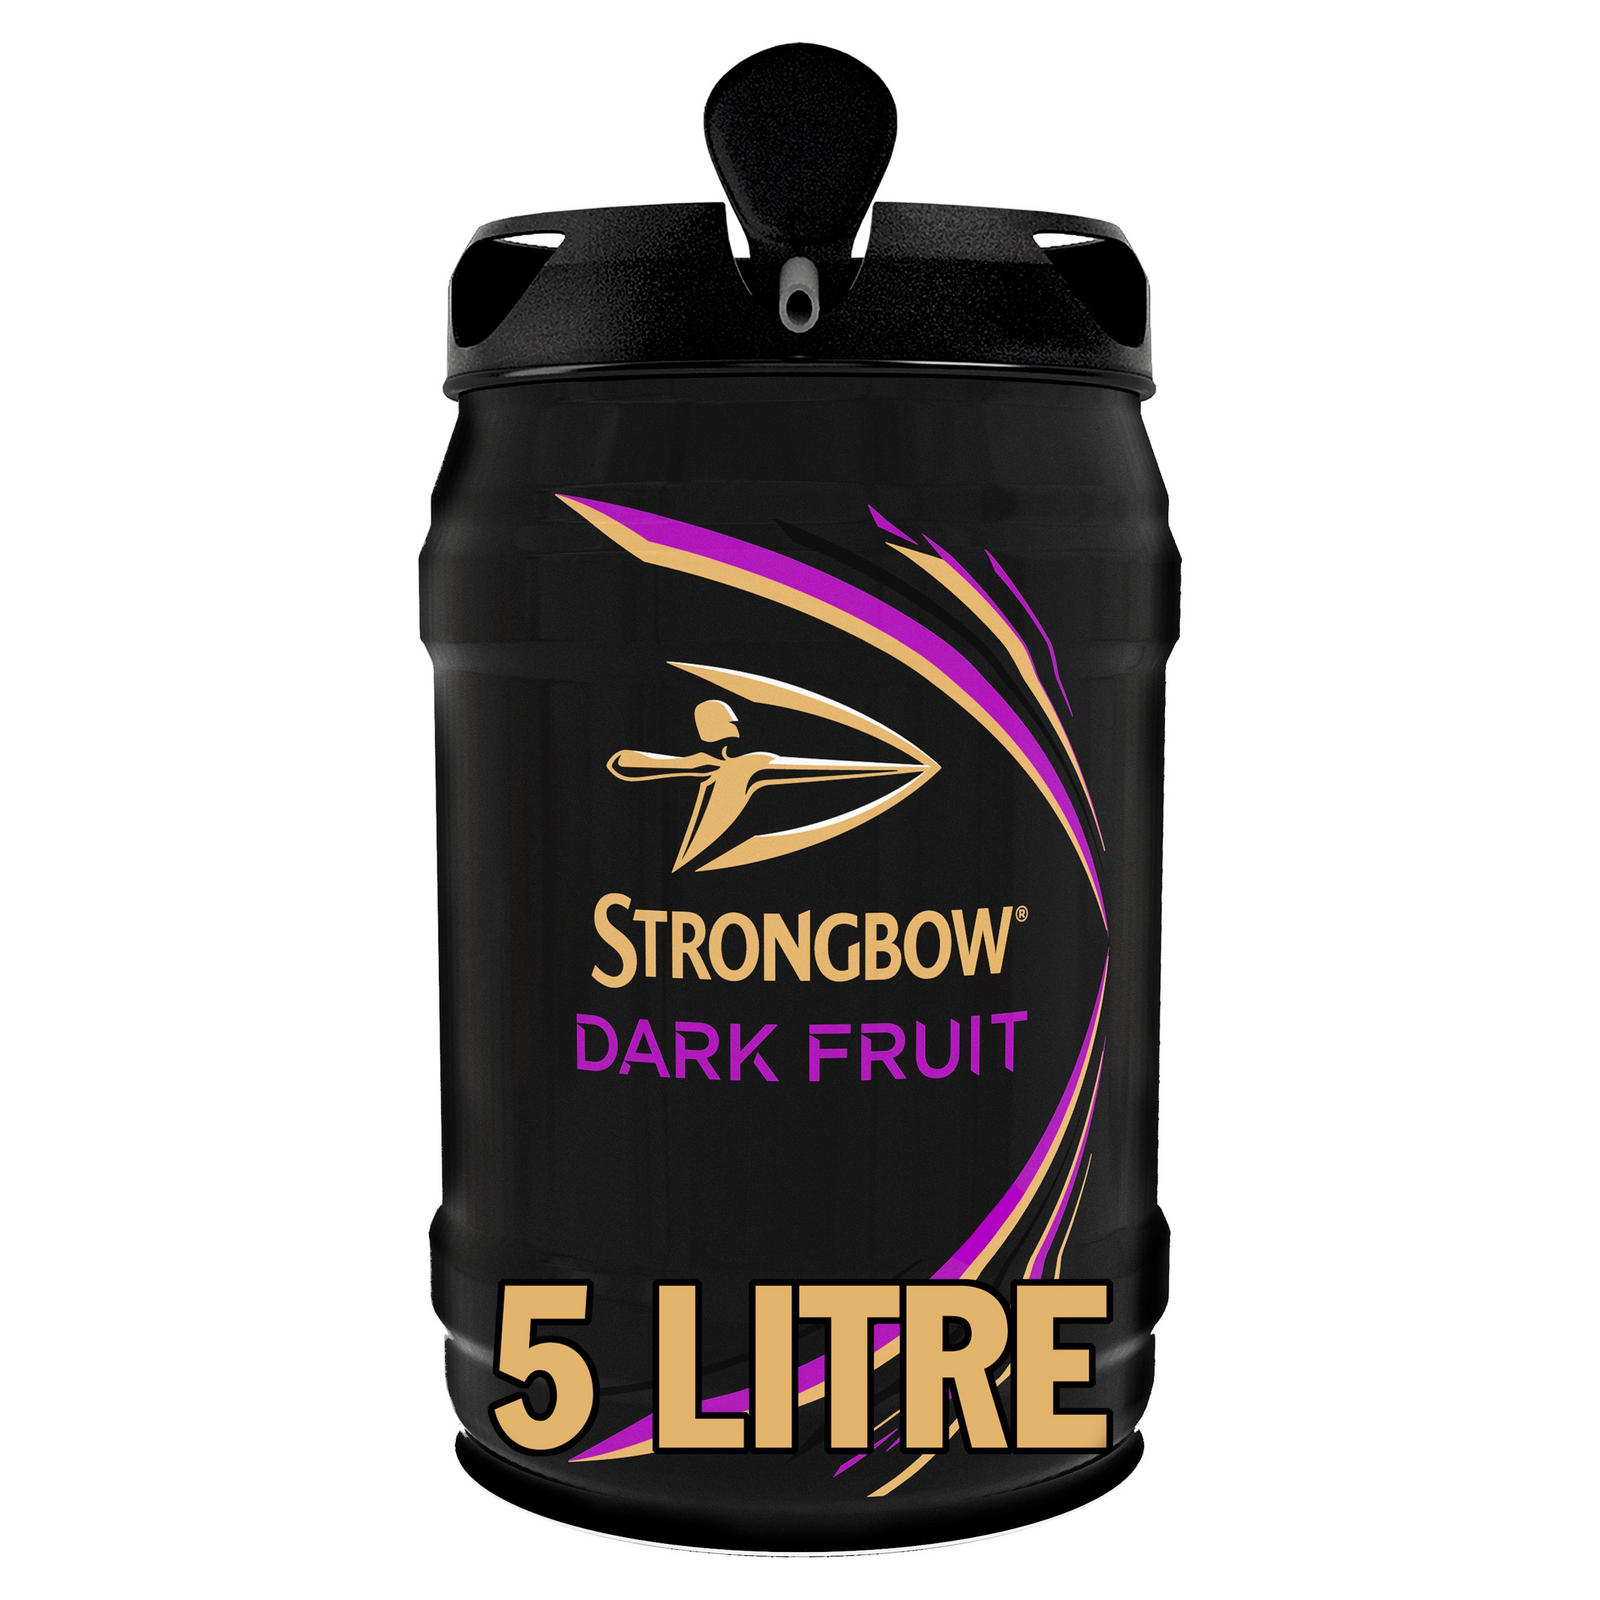 Strongbow Dark Fruit Cider 5L Keg | Cider | Iceland Foods